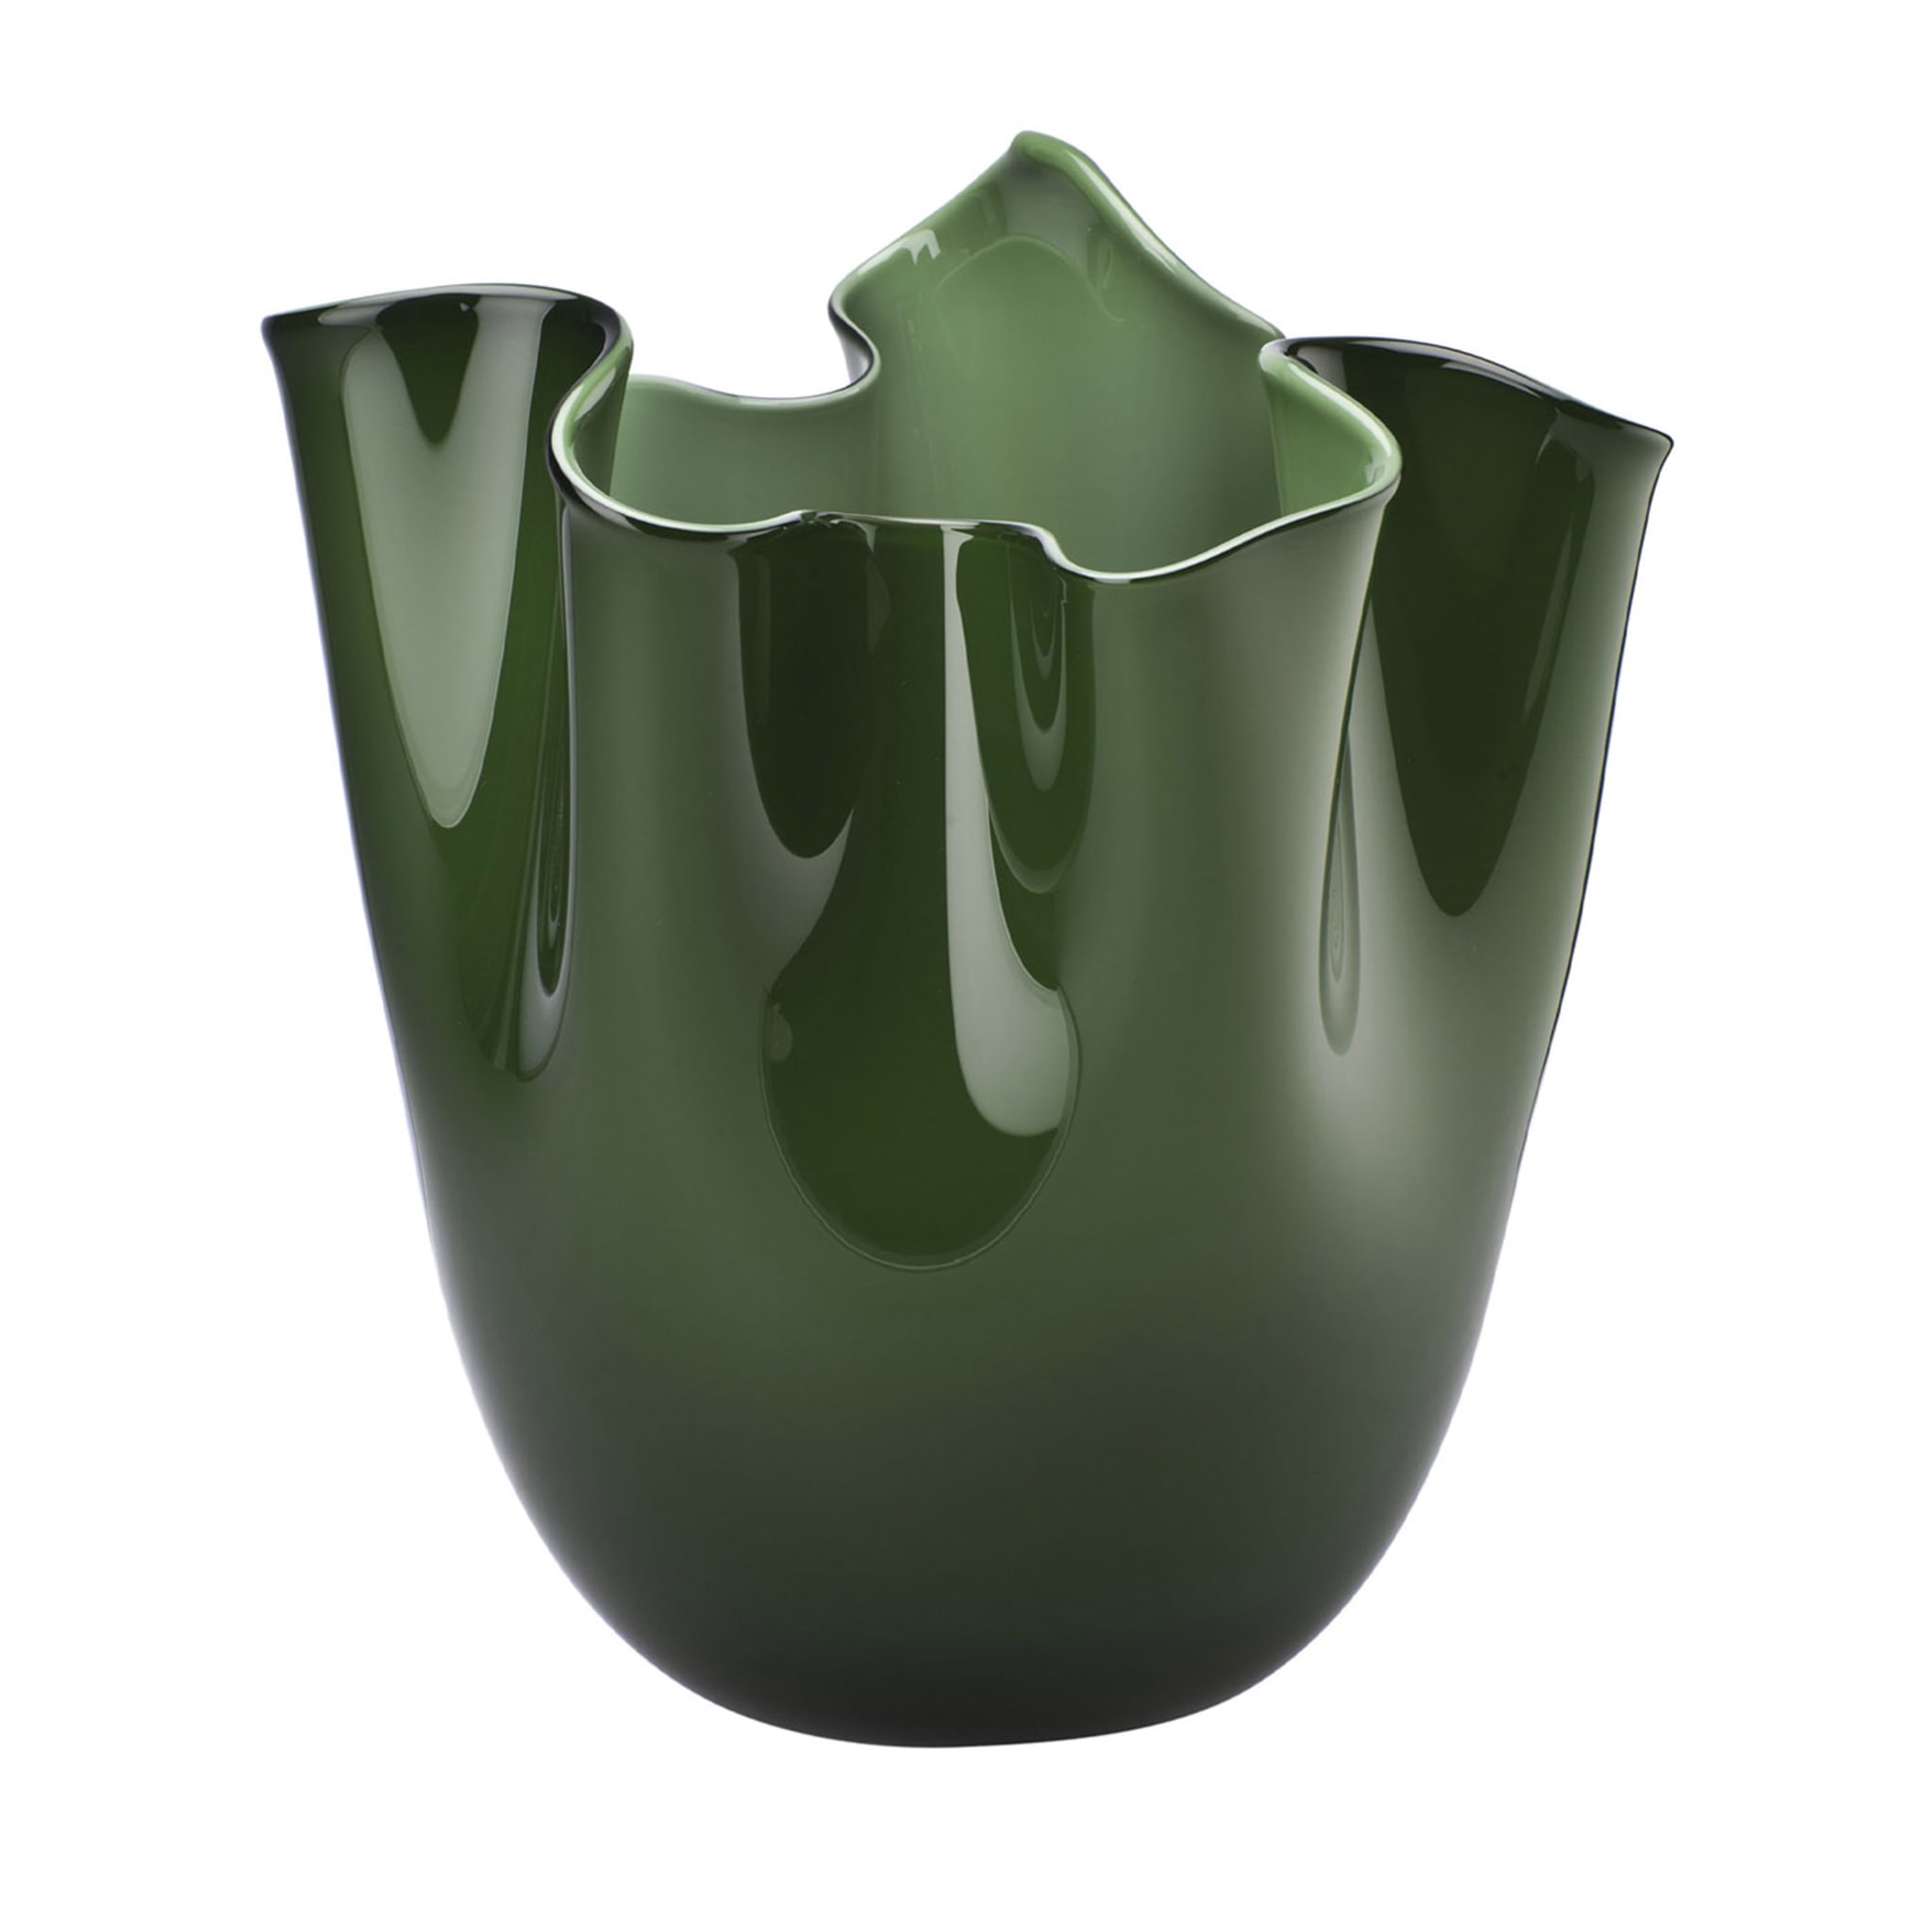 Fazzoletto Apple Green Vase by Paolo Venini and Fulvio Bianconi - Main view